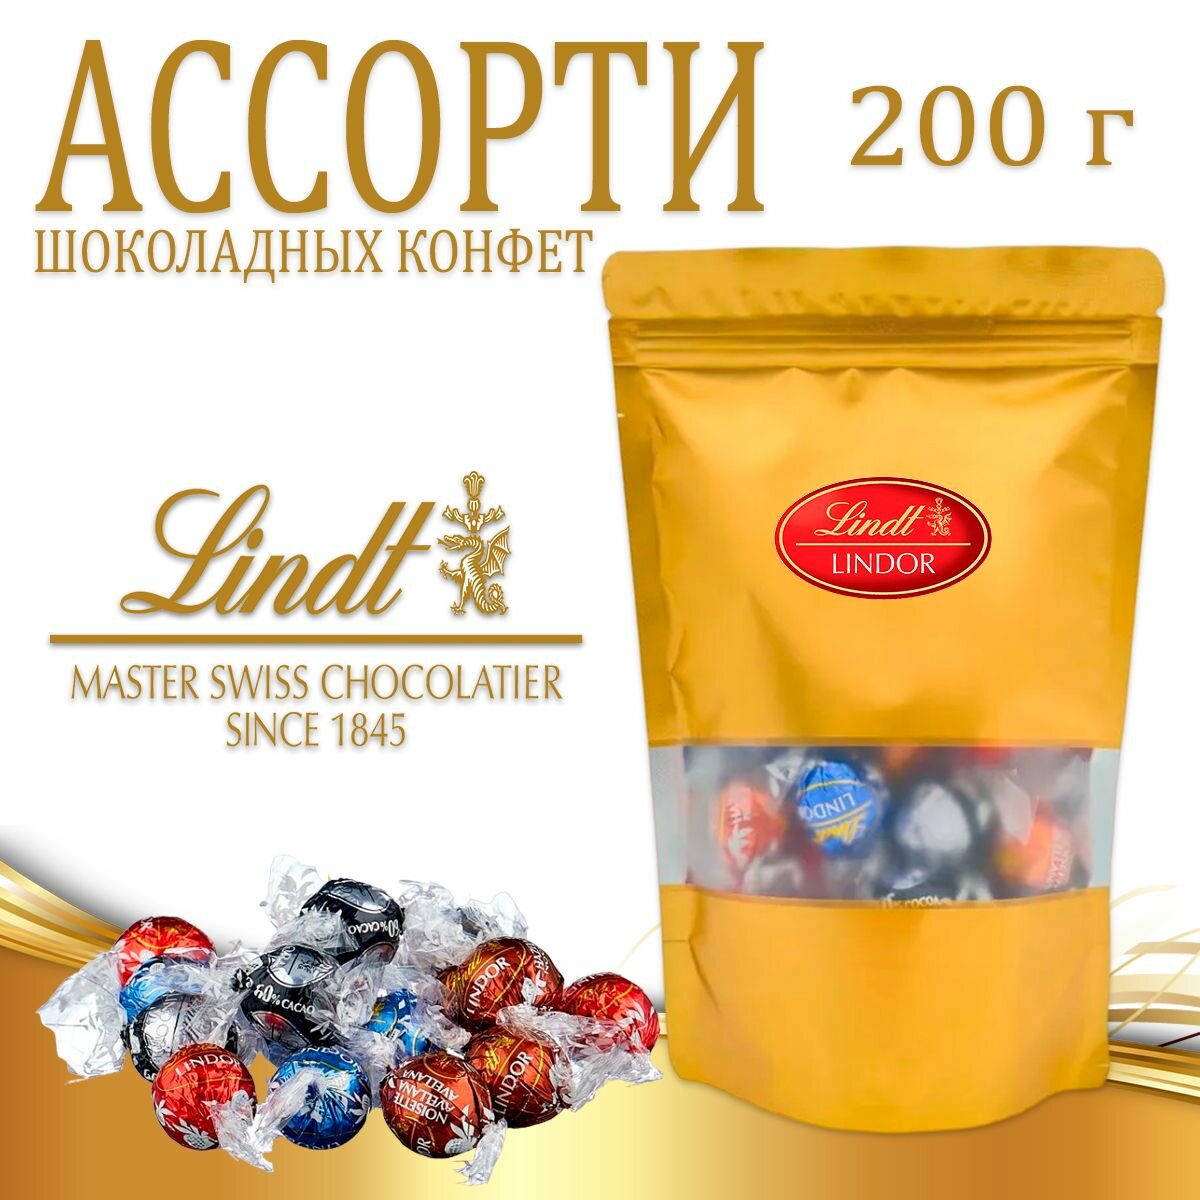 Шоколадные конфеты ассорти Lindt Lindor с тающей начинкой, 200 г - фотография № 1